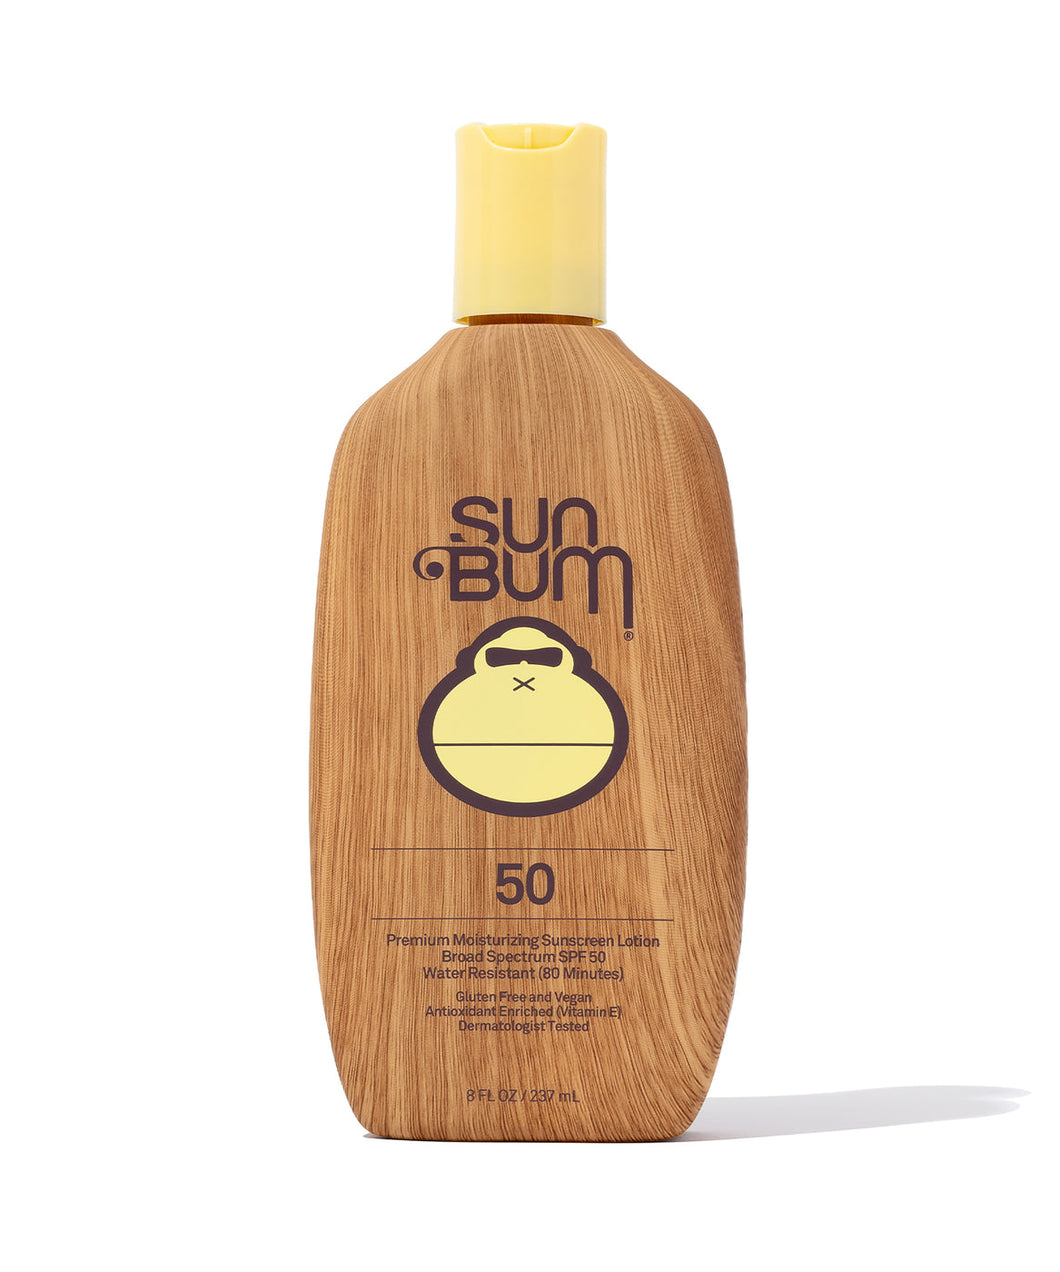 sun bum 50 sunscreen lotion